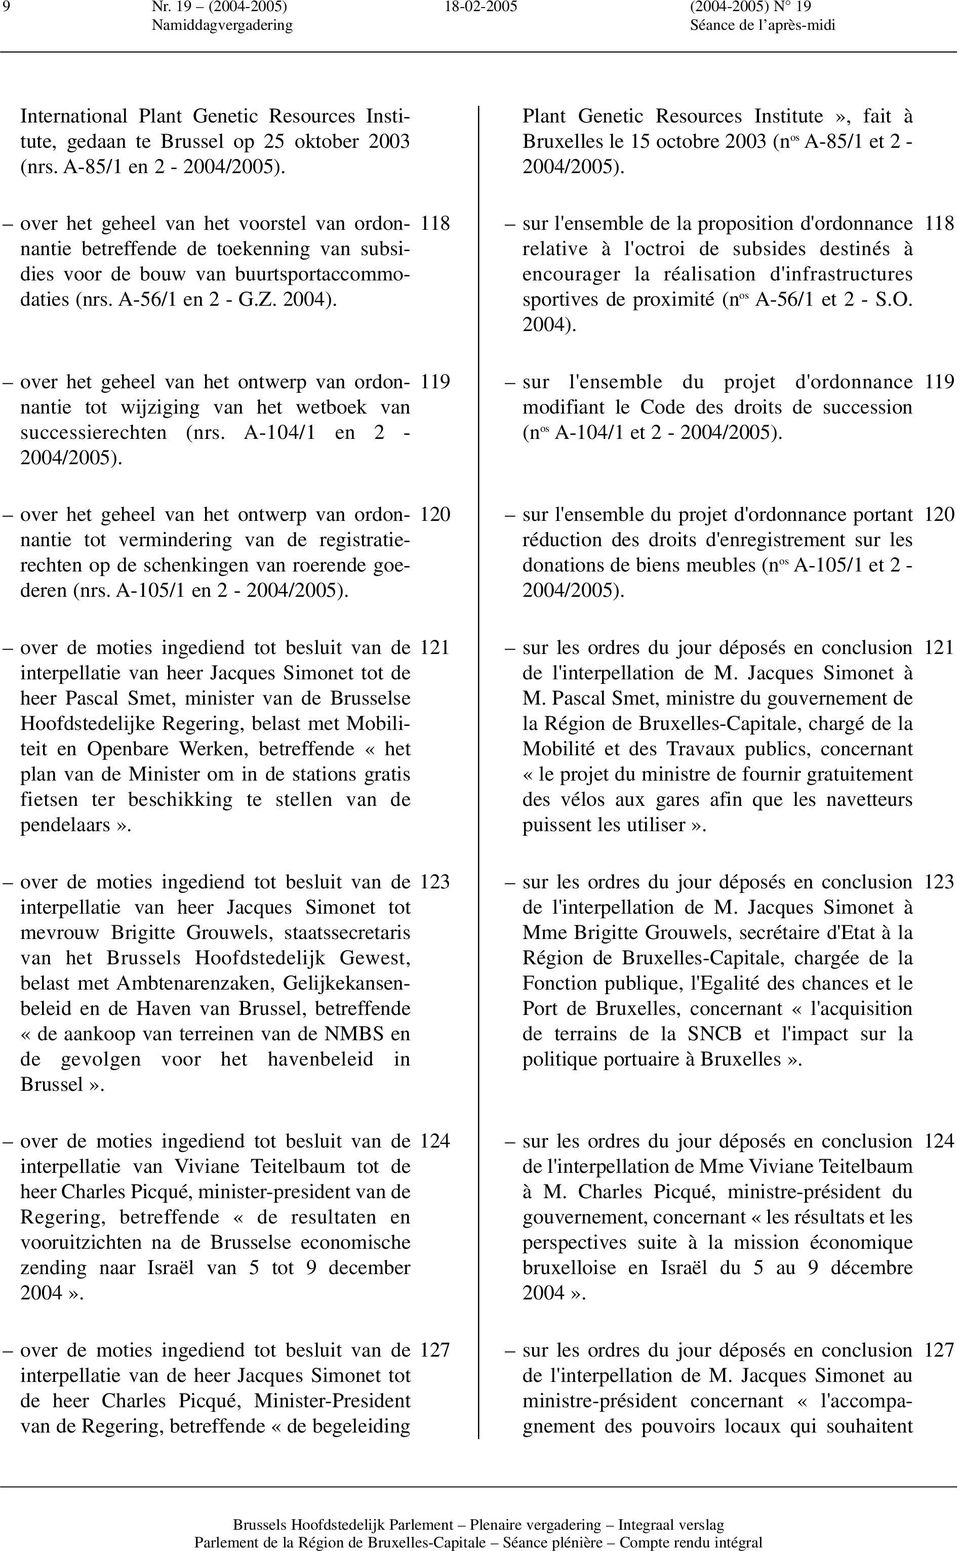 over het geheel van het ontwerp van ordonnantie tot wijziging van het wetboek van successierechten (nrs. A-104/1 en 2-2004/2005).